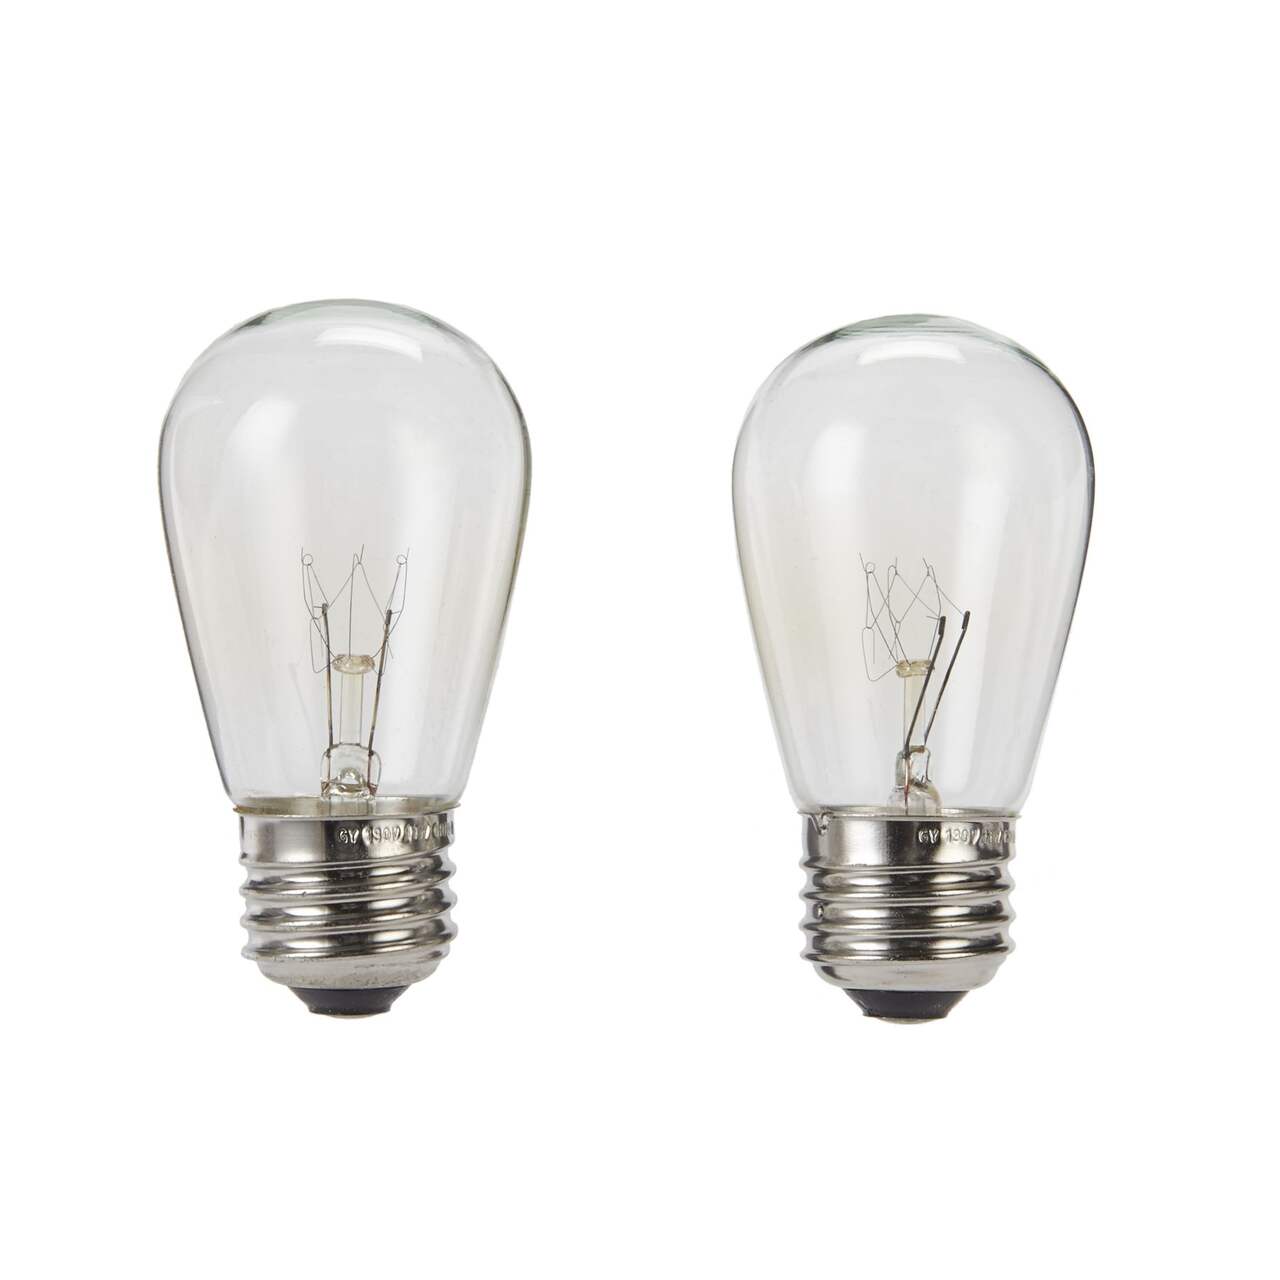 Ampoules incandescentes de rechange CANVAS, E26 11 W, transparent